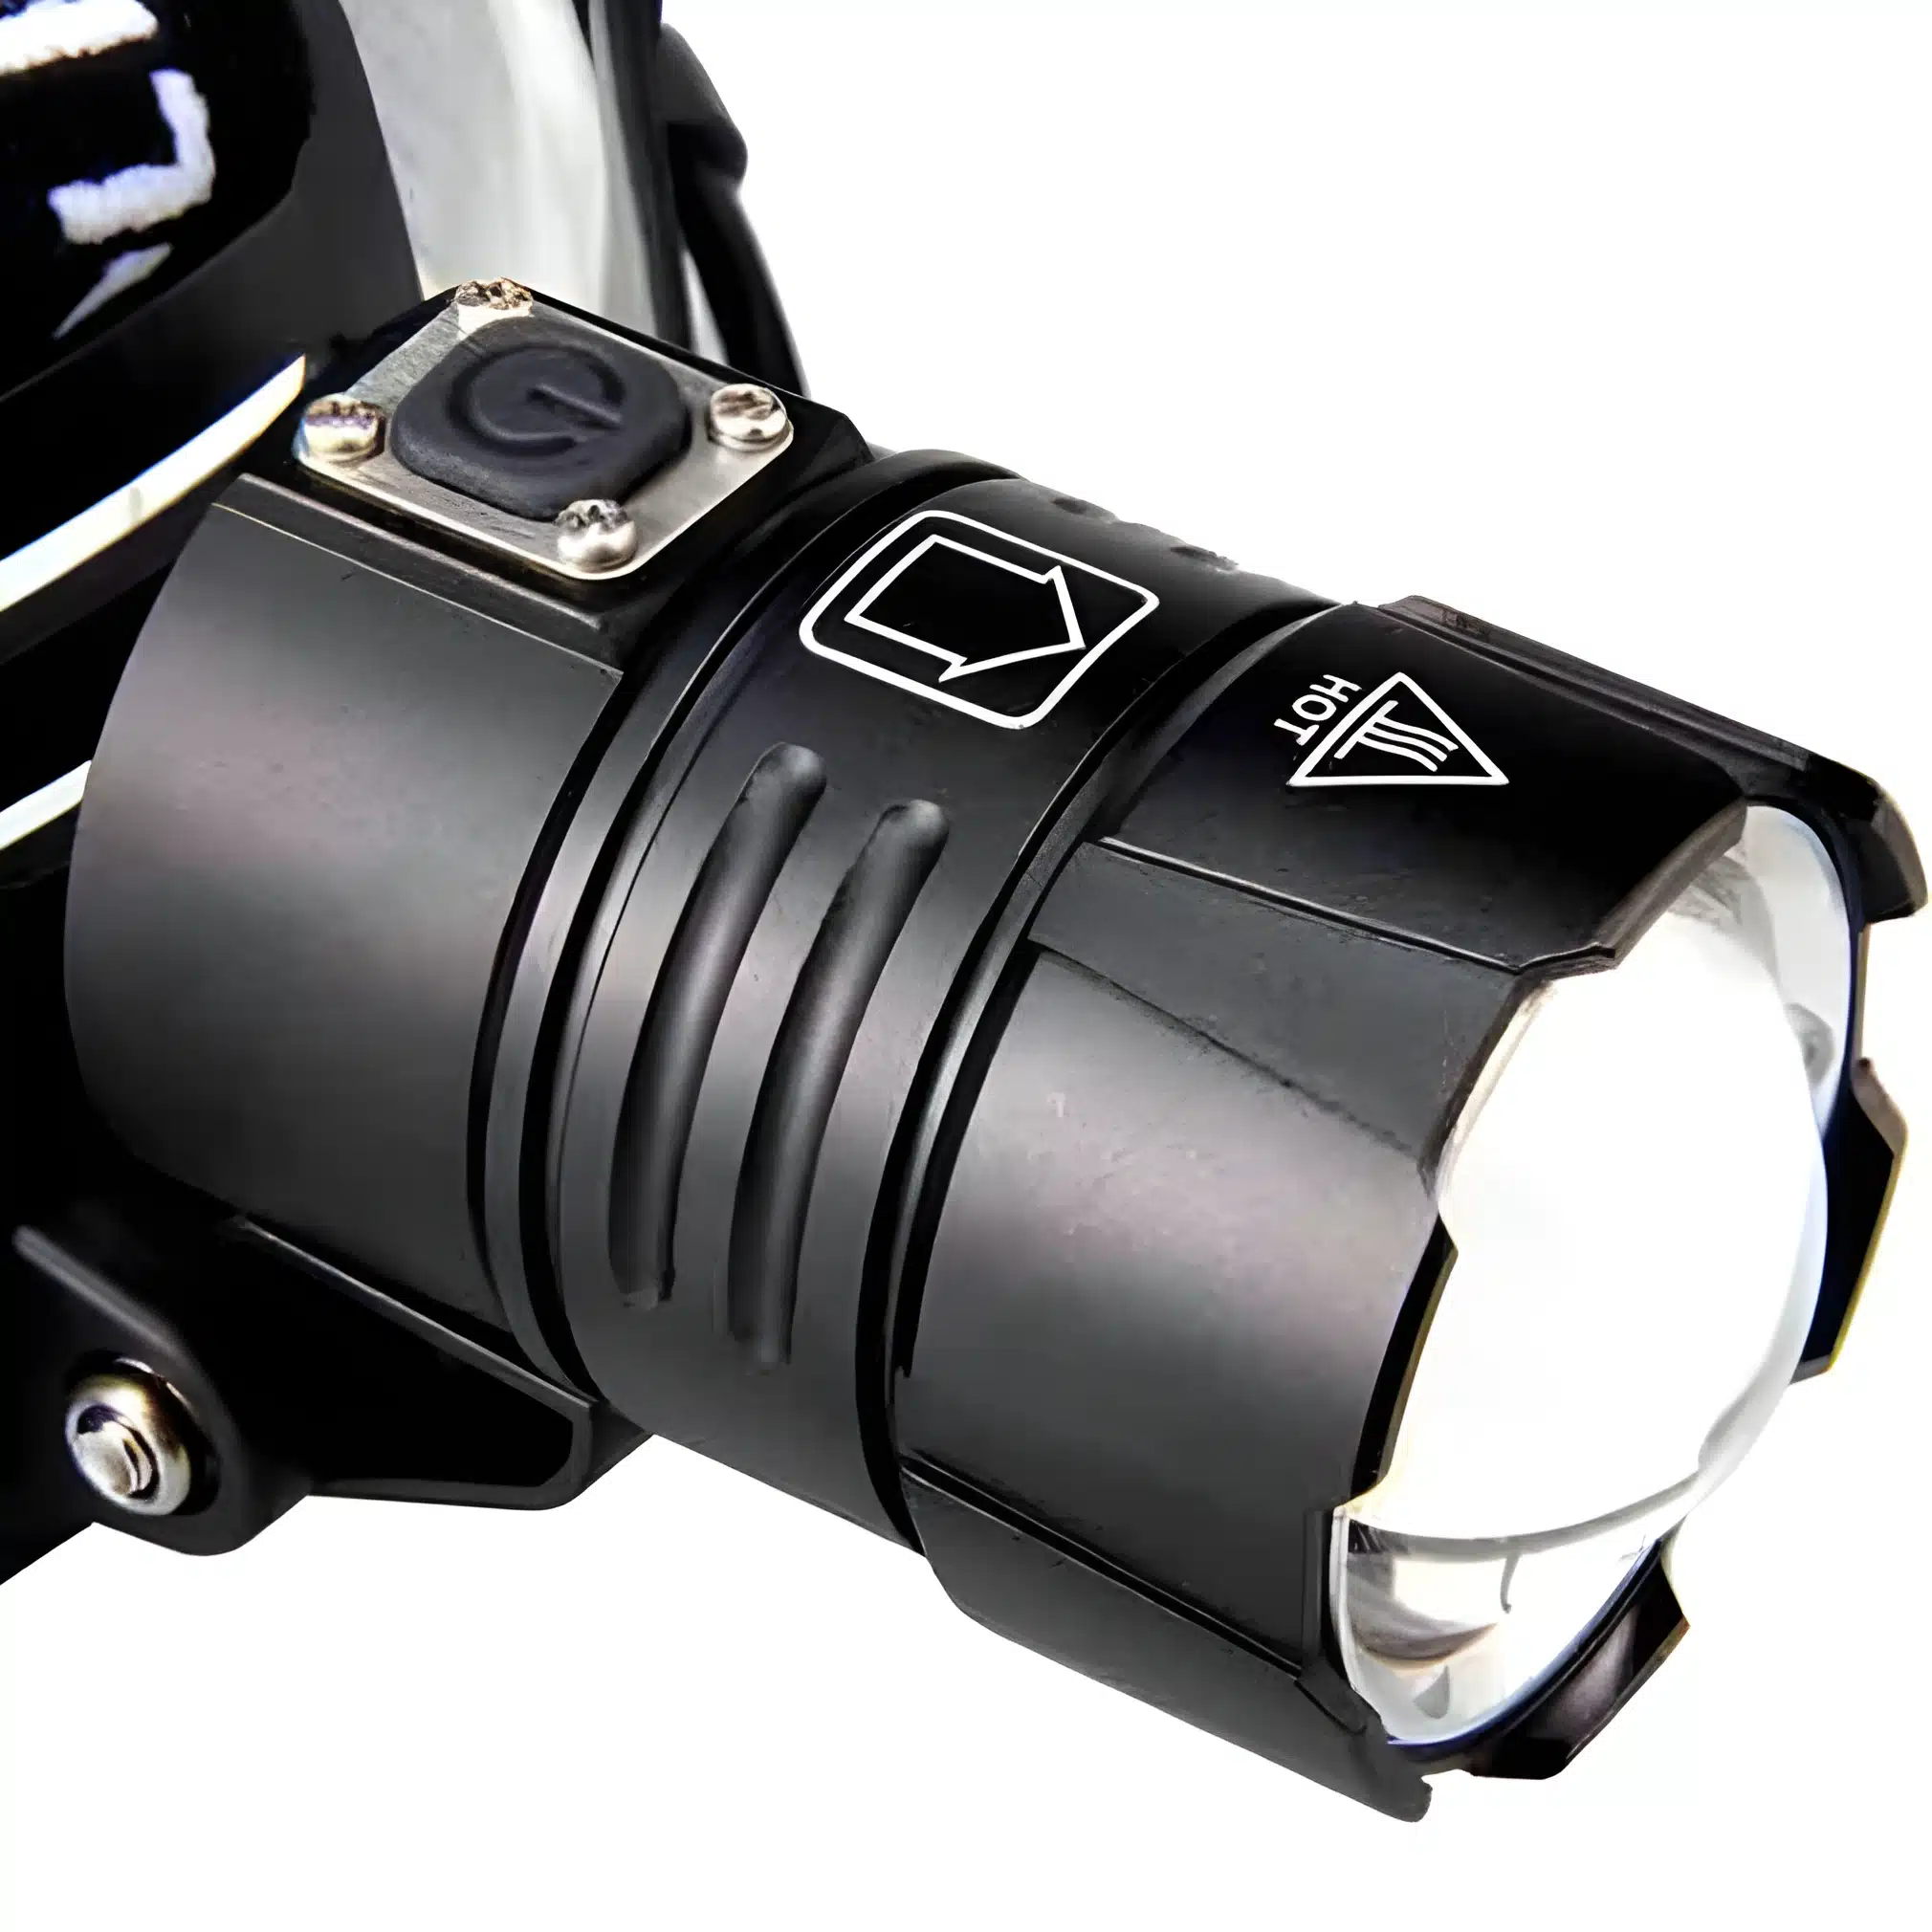 Torche frontale de tete - 30W LED - Rechargeable - Noir prix